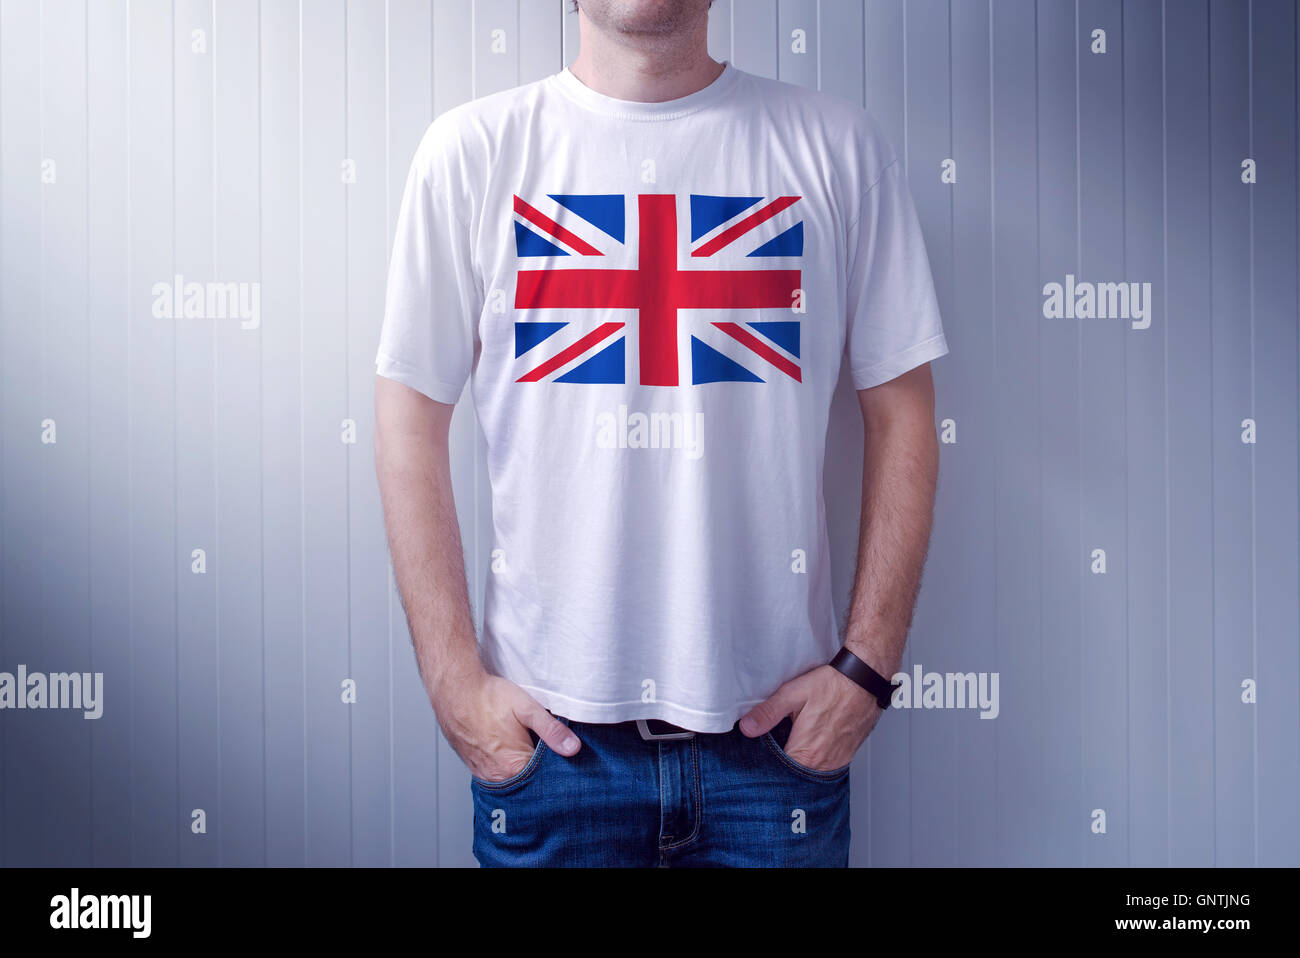 Hombre vestido con camisa blanca con bandera del Reino Unido imprimir, macho adulto persona apoyando a Gran Bretaña Foto de stock